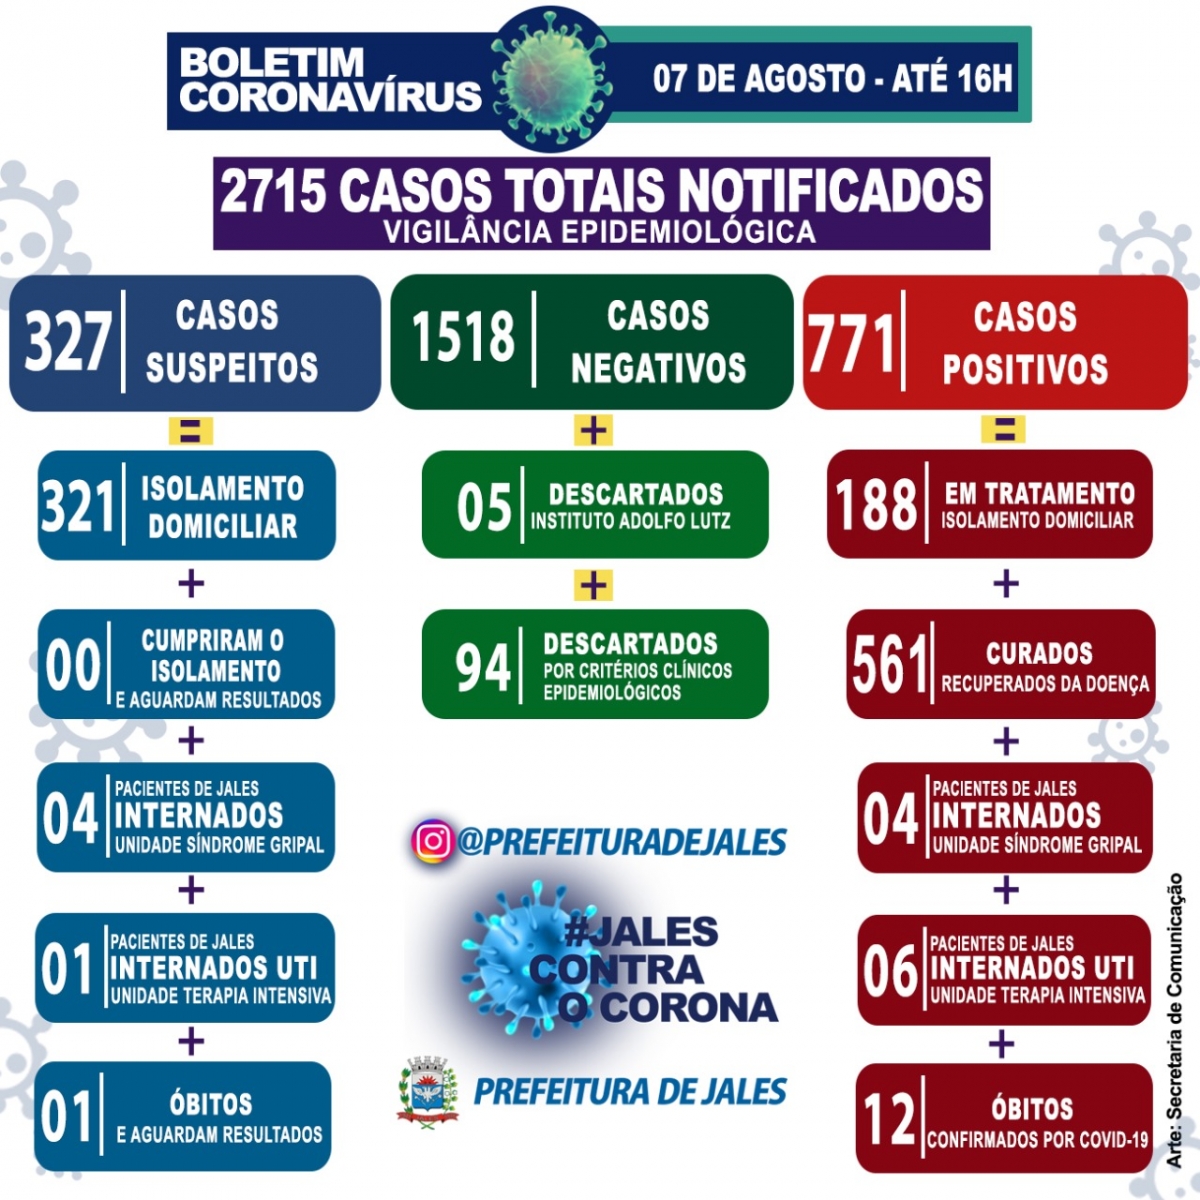 Jales -Taxa de ocupação (UTI) 100%;  Em 24 horas registrou 80 notificações de casos suspeitos para a Covid-19 (Coronavírus) no município.